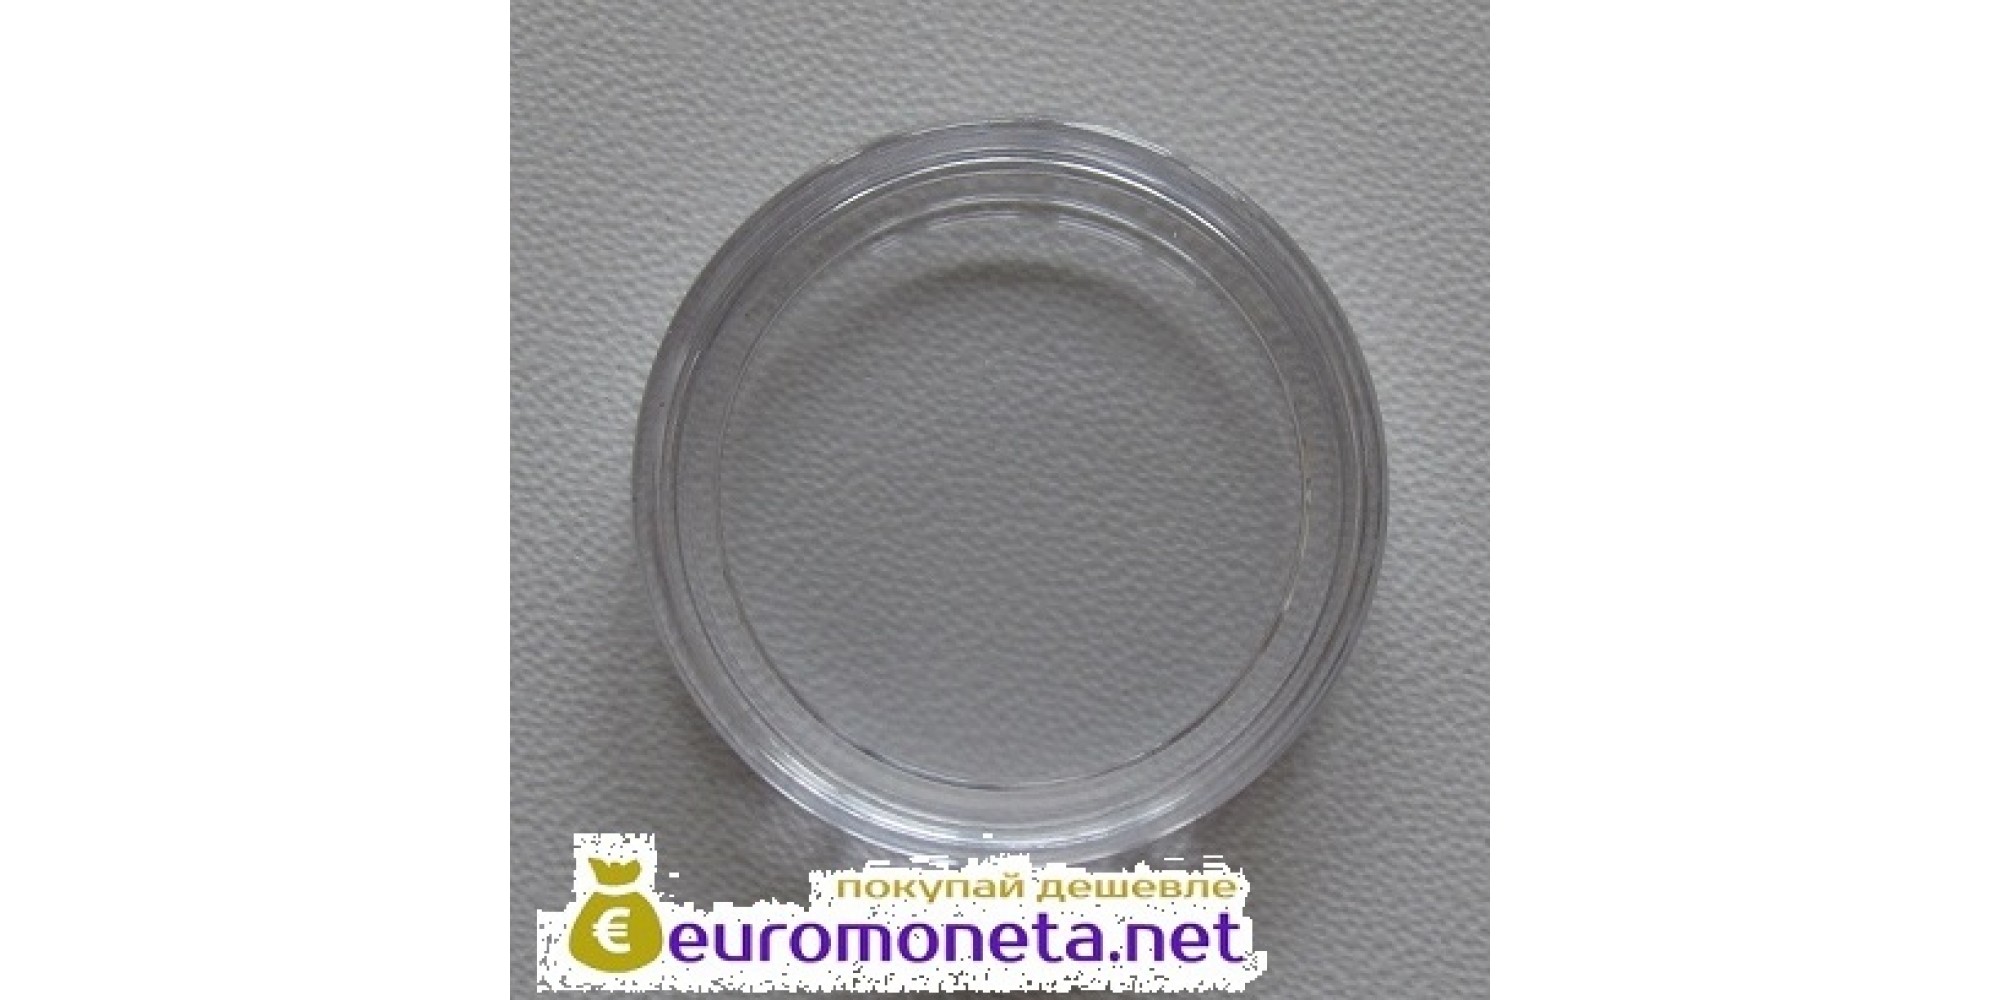 Польша круглая капсула для монет 24 мм 10 штук